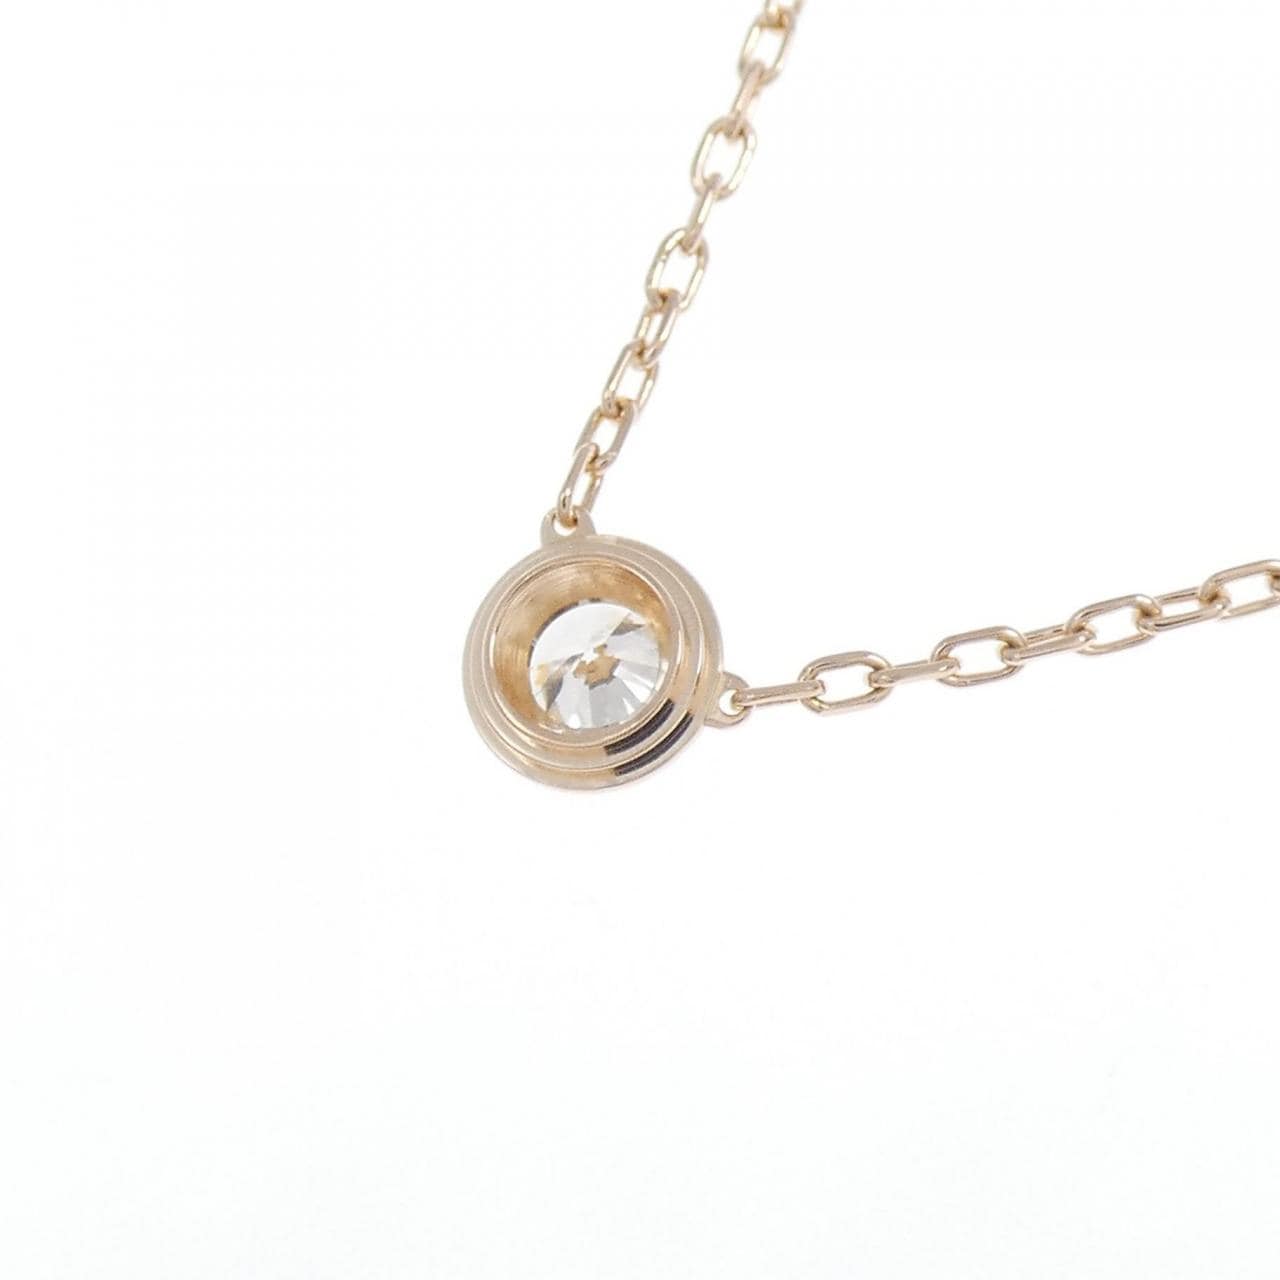 Authentic Cartier d'Amour Large Necklace #260-004-270-0944 | eBay